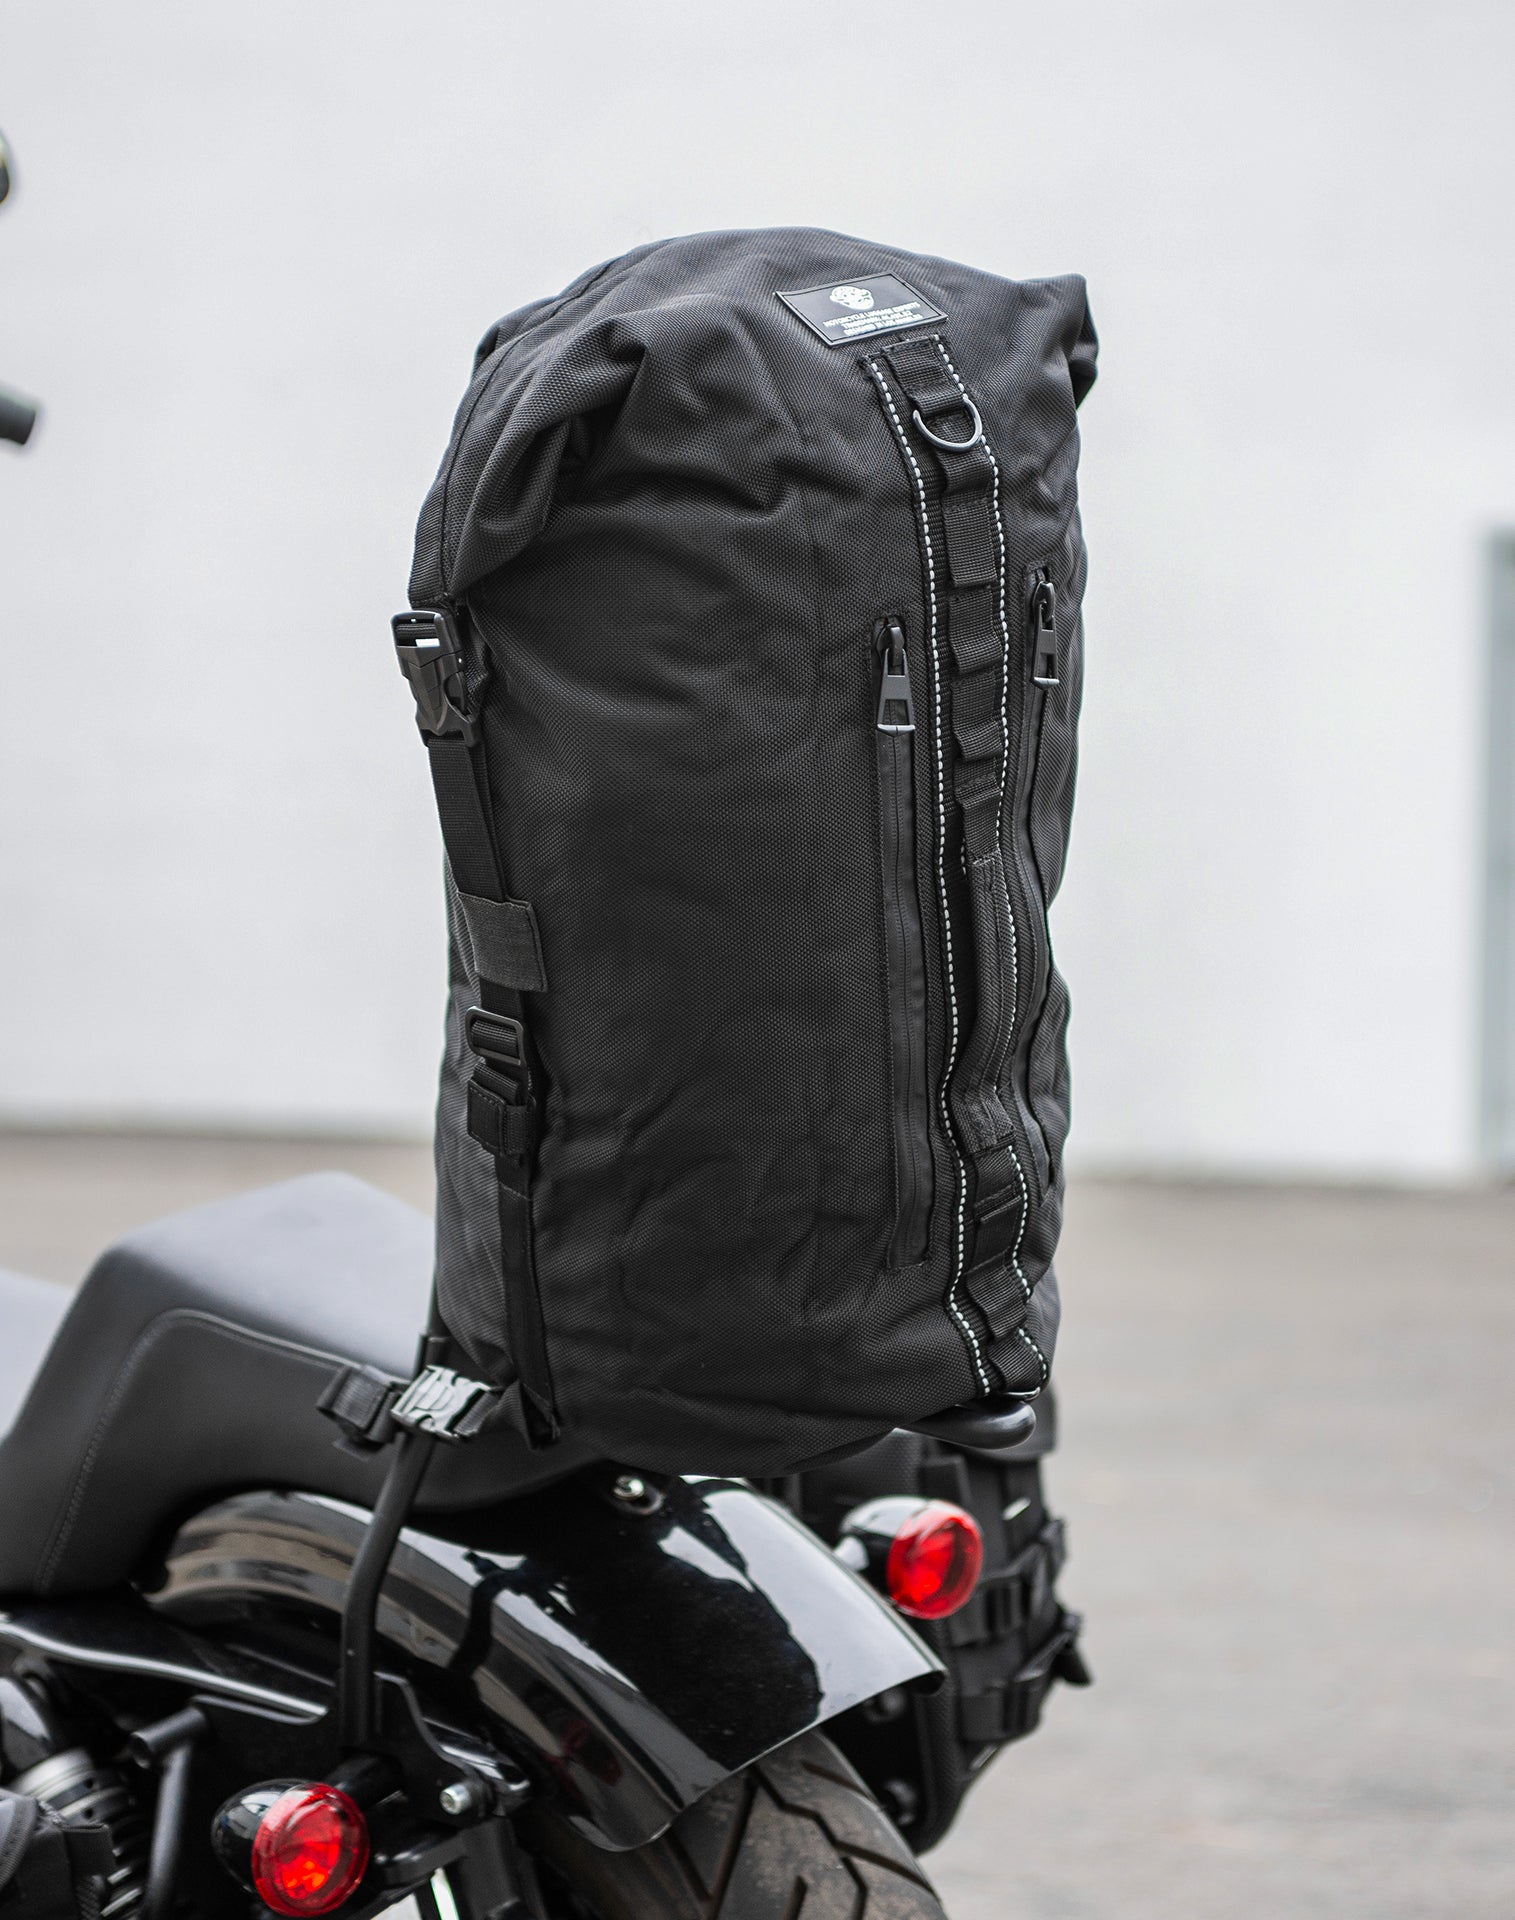 35L - Renegade XL Hyosung Motorcycle Tail Bag